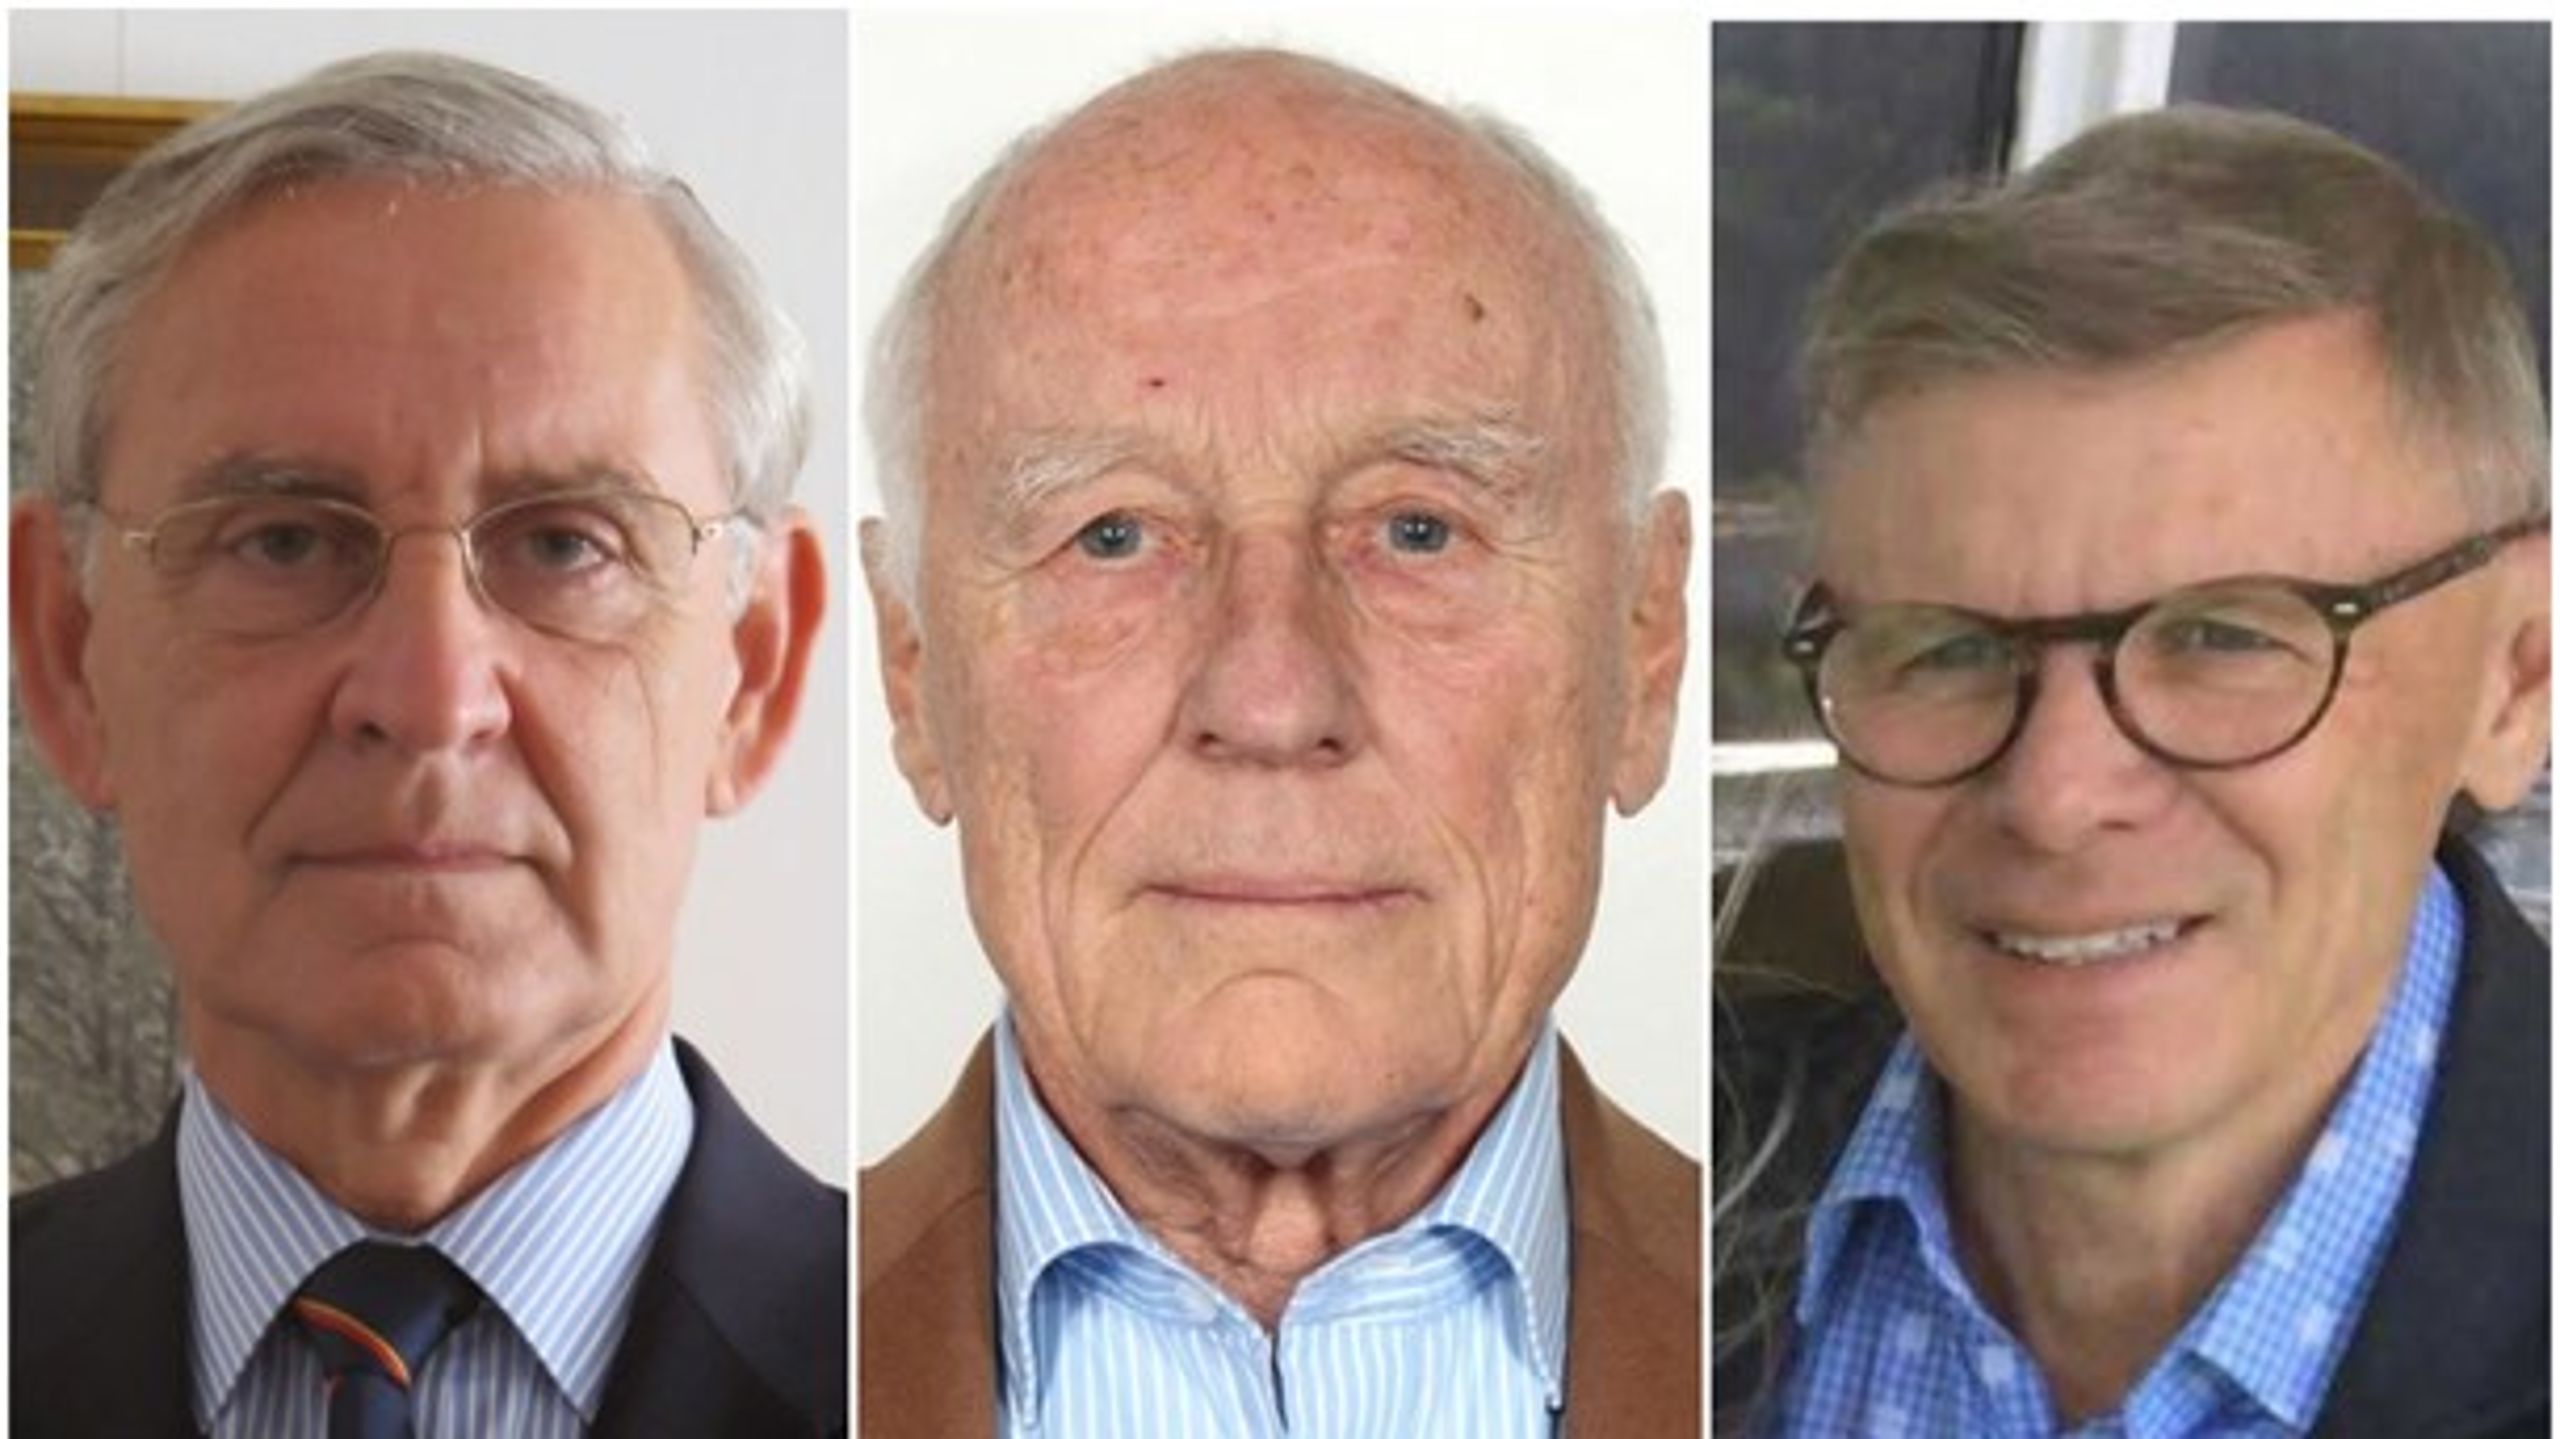 Karlis Neretnieks, Frank Rosenius och Peter Lagerblad, alla ledamöter av Kungl Krigsvetenskapsakademien.